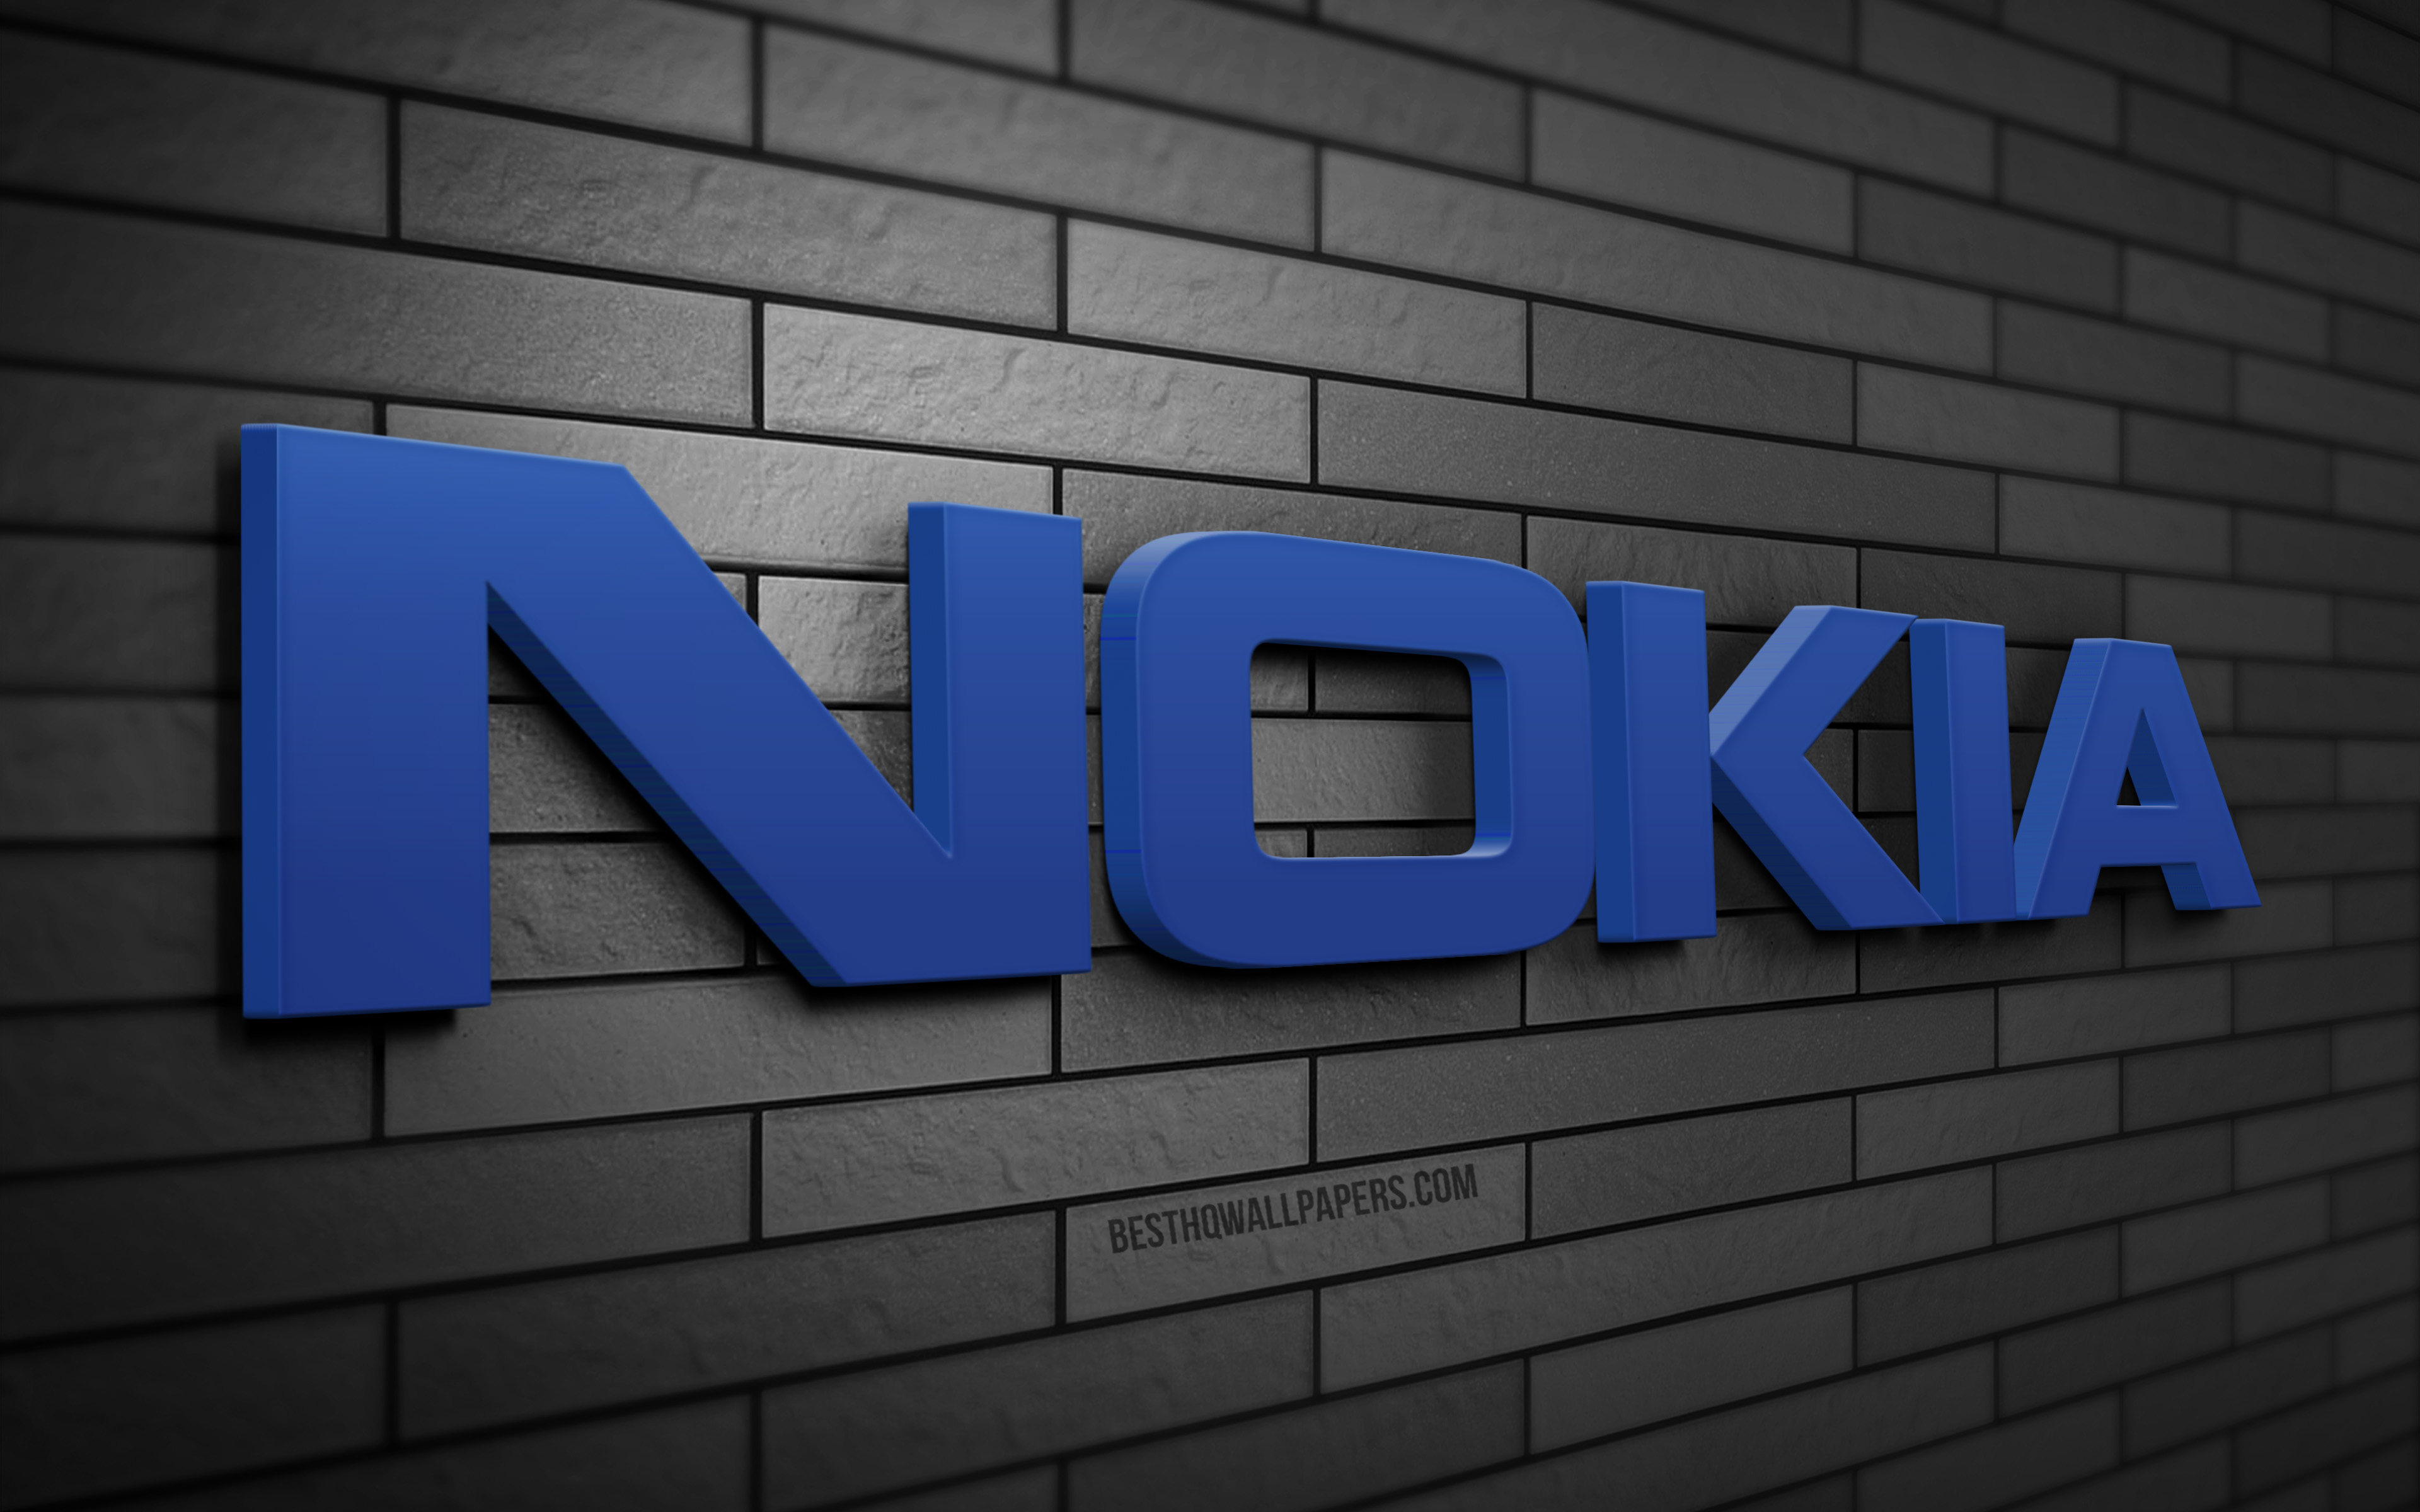 Nokia Logo 4k